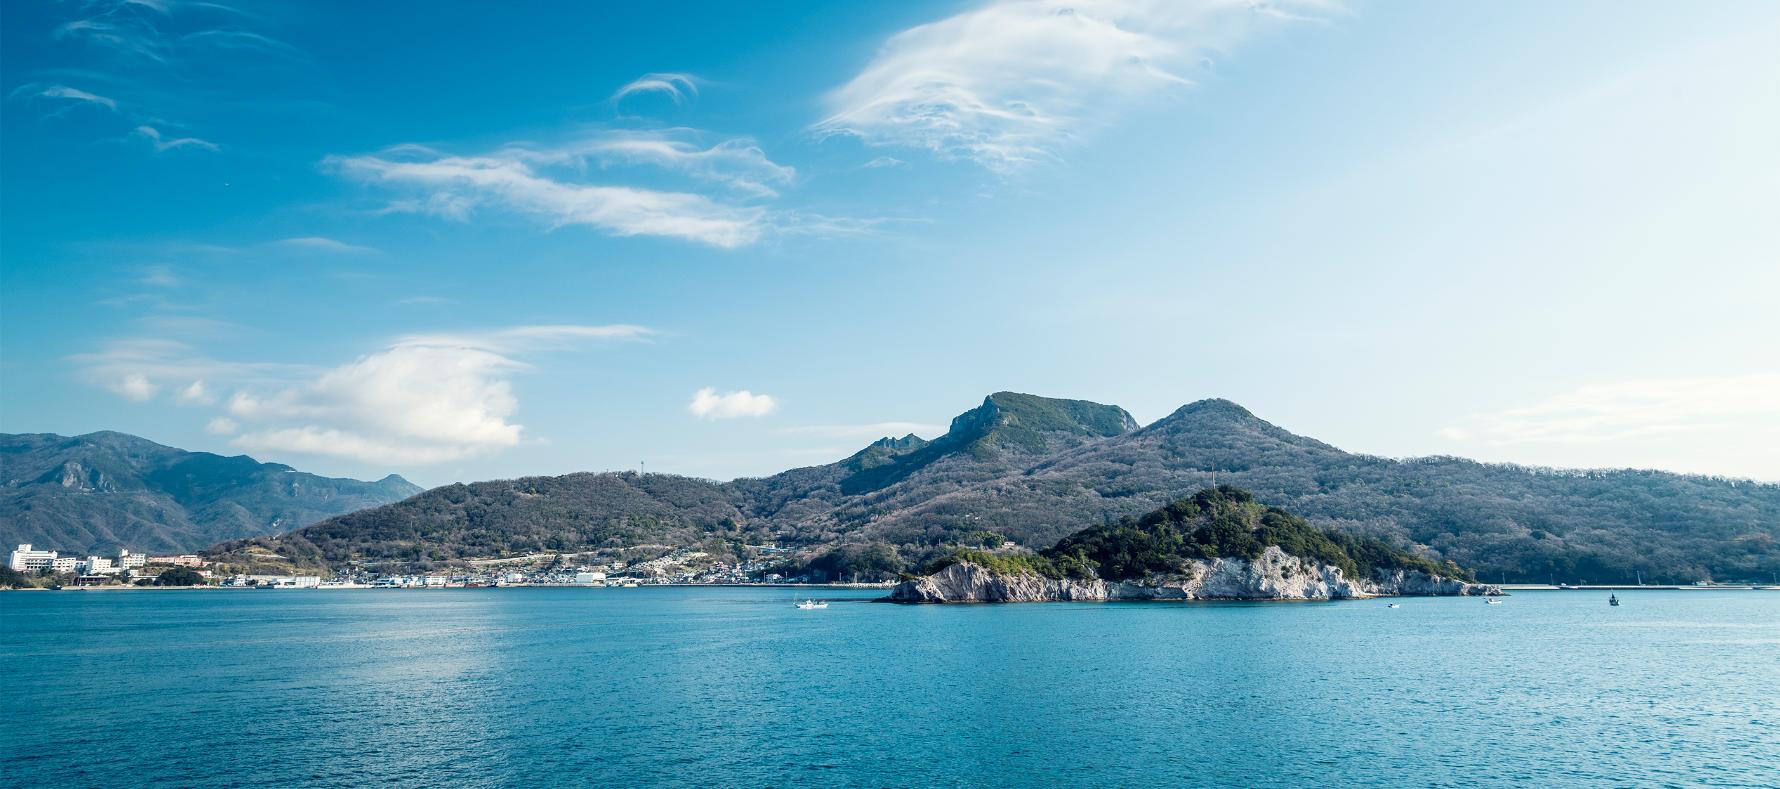 坂手沖から見た小豆島の写真